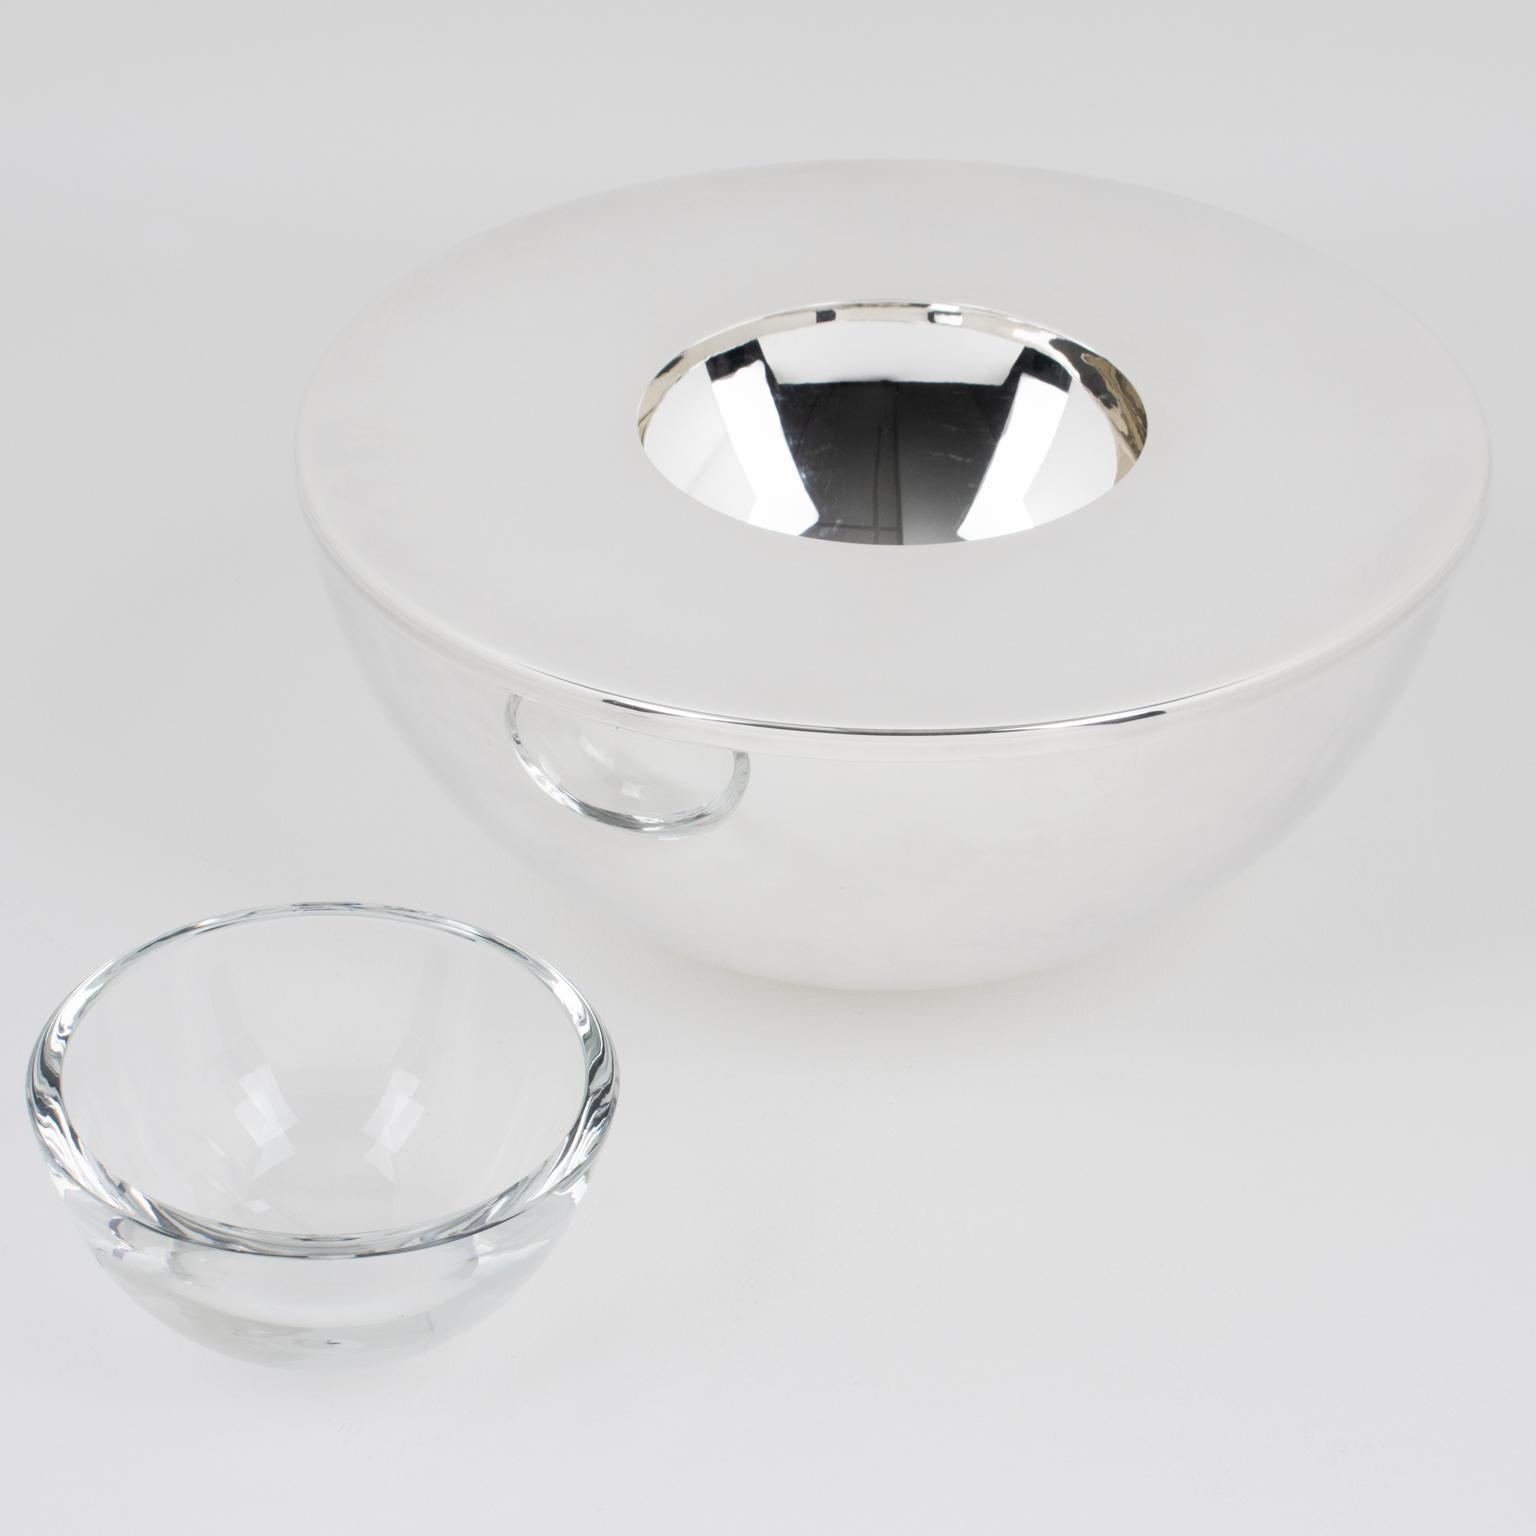 Fin du 20e siècle Swid Powell for Calvin Klein Silver Plate and Crystal Caviar Bowl Dish Chiller (assiette réfrigérante en métal argenté et cristal) en vente